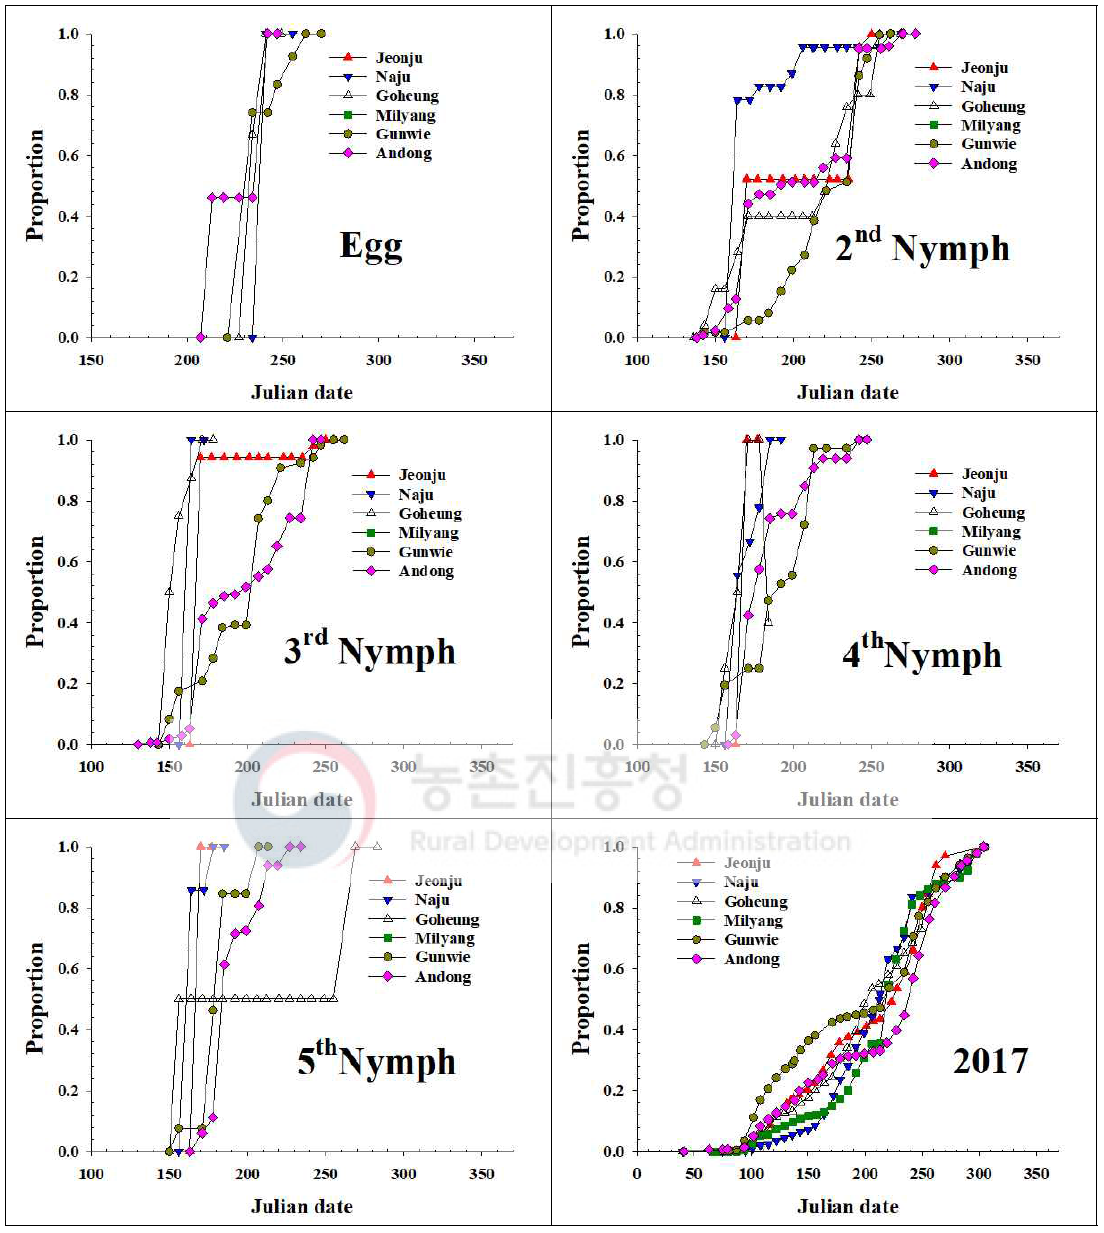 내륙지역 톱다리개미허리노린재 발육단계별 개체수 누적증가 지역간 비교(2017)